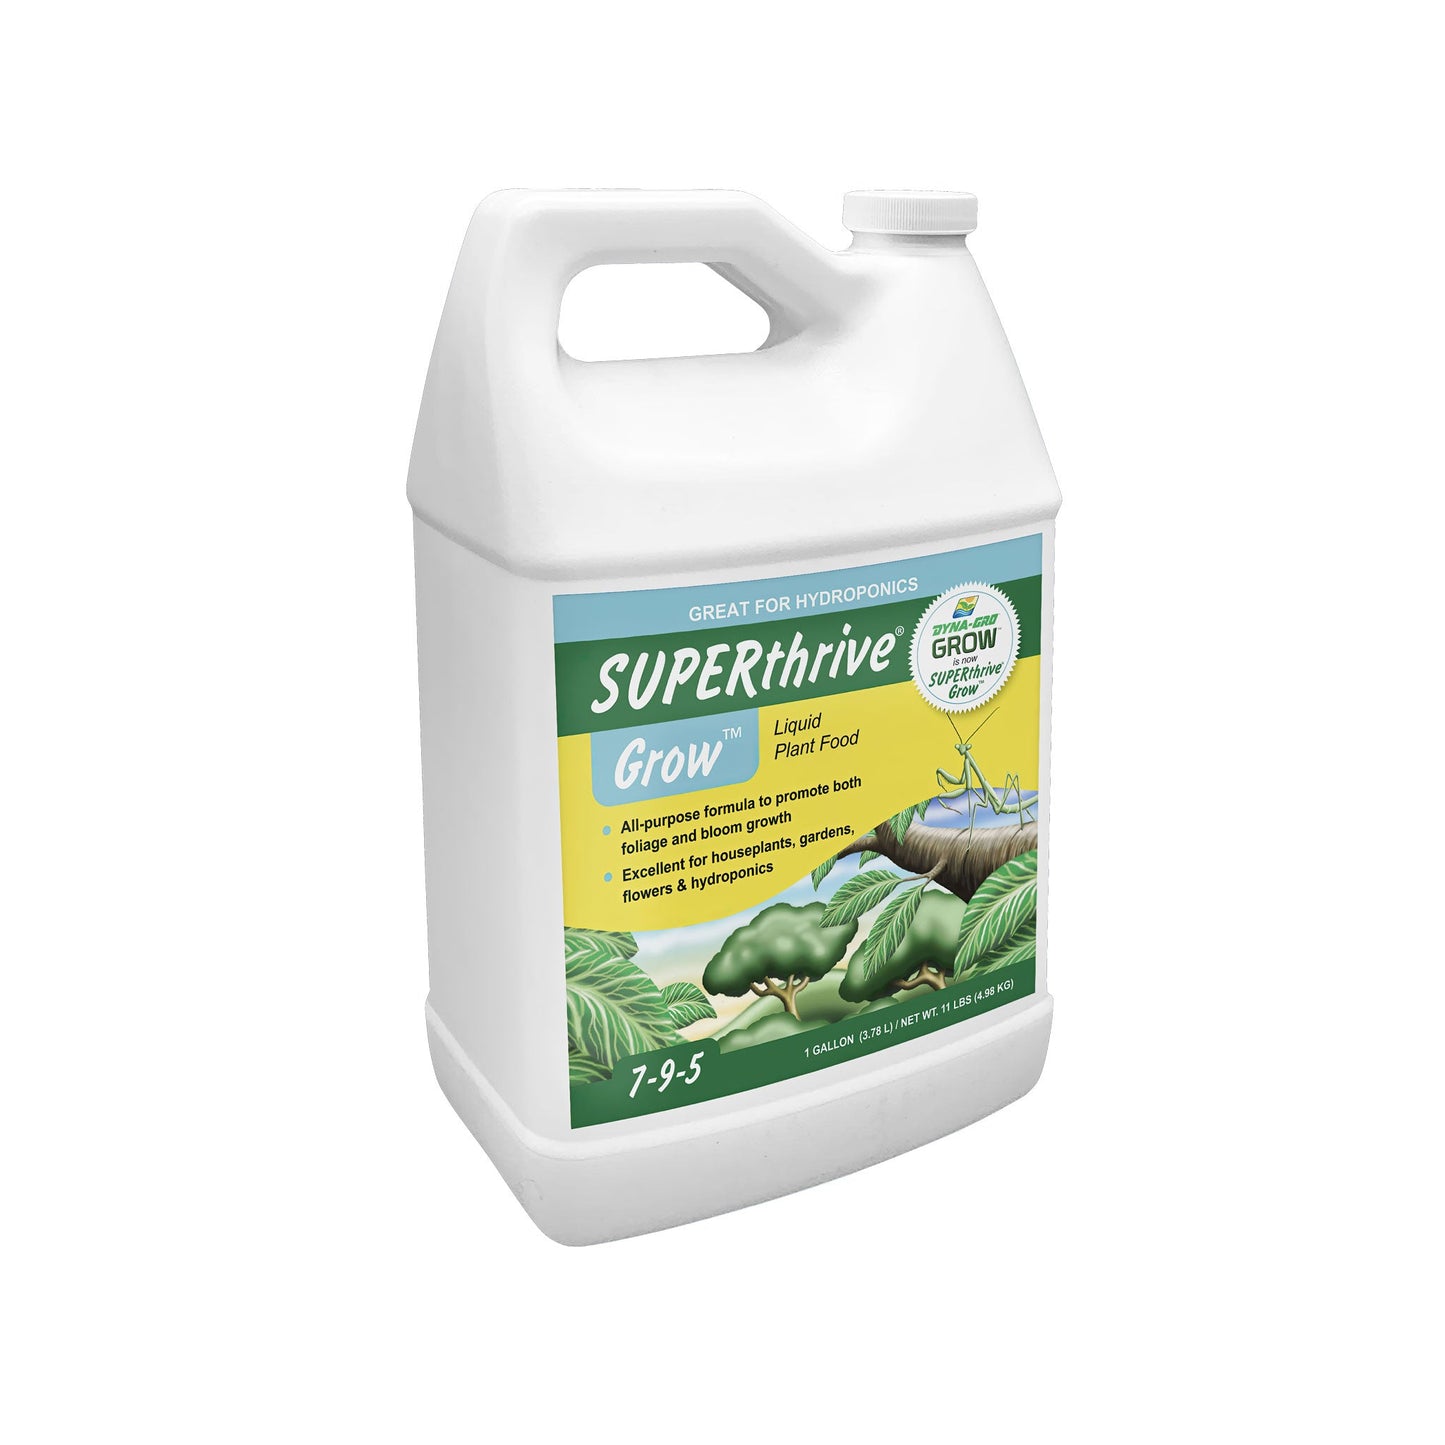 SUPERthrive Grow 7-9-5 - Fertiliser